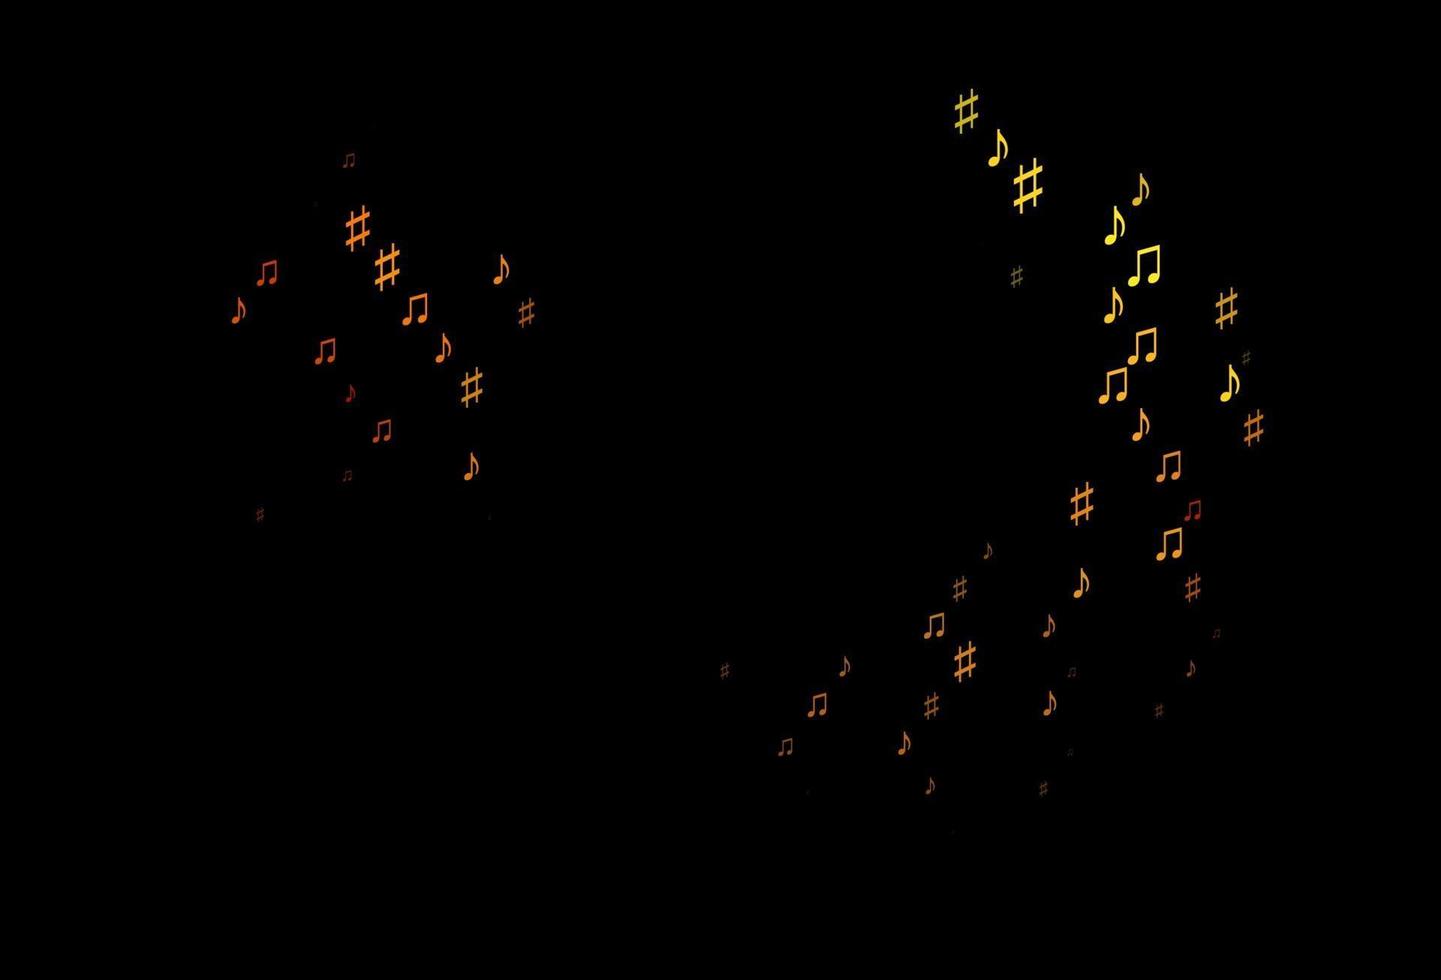 sfondo vettoriale arancione scuro con note musicali.